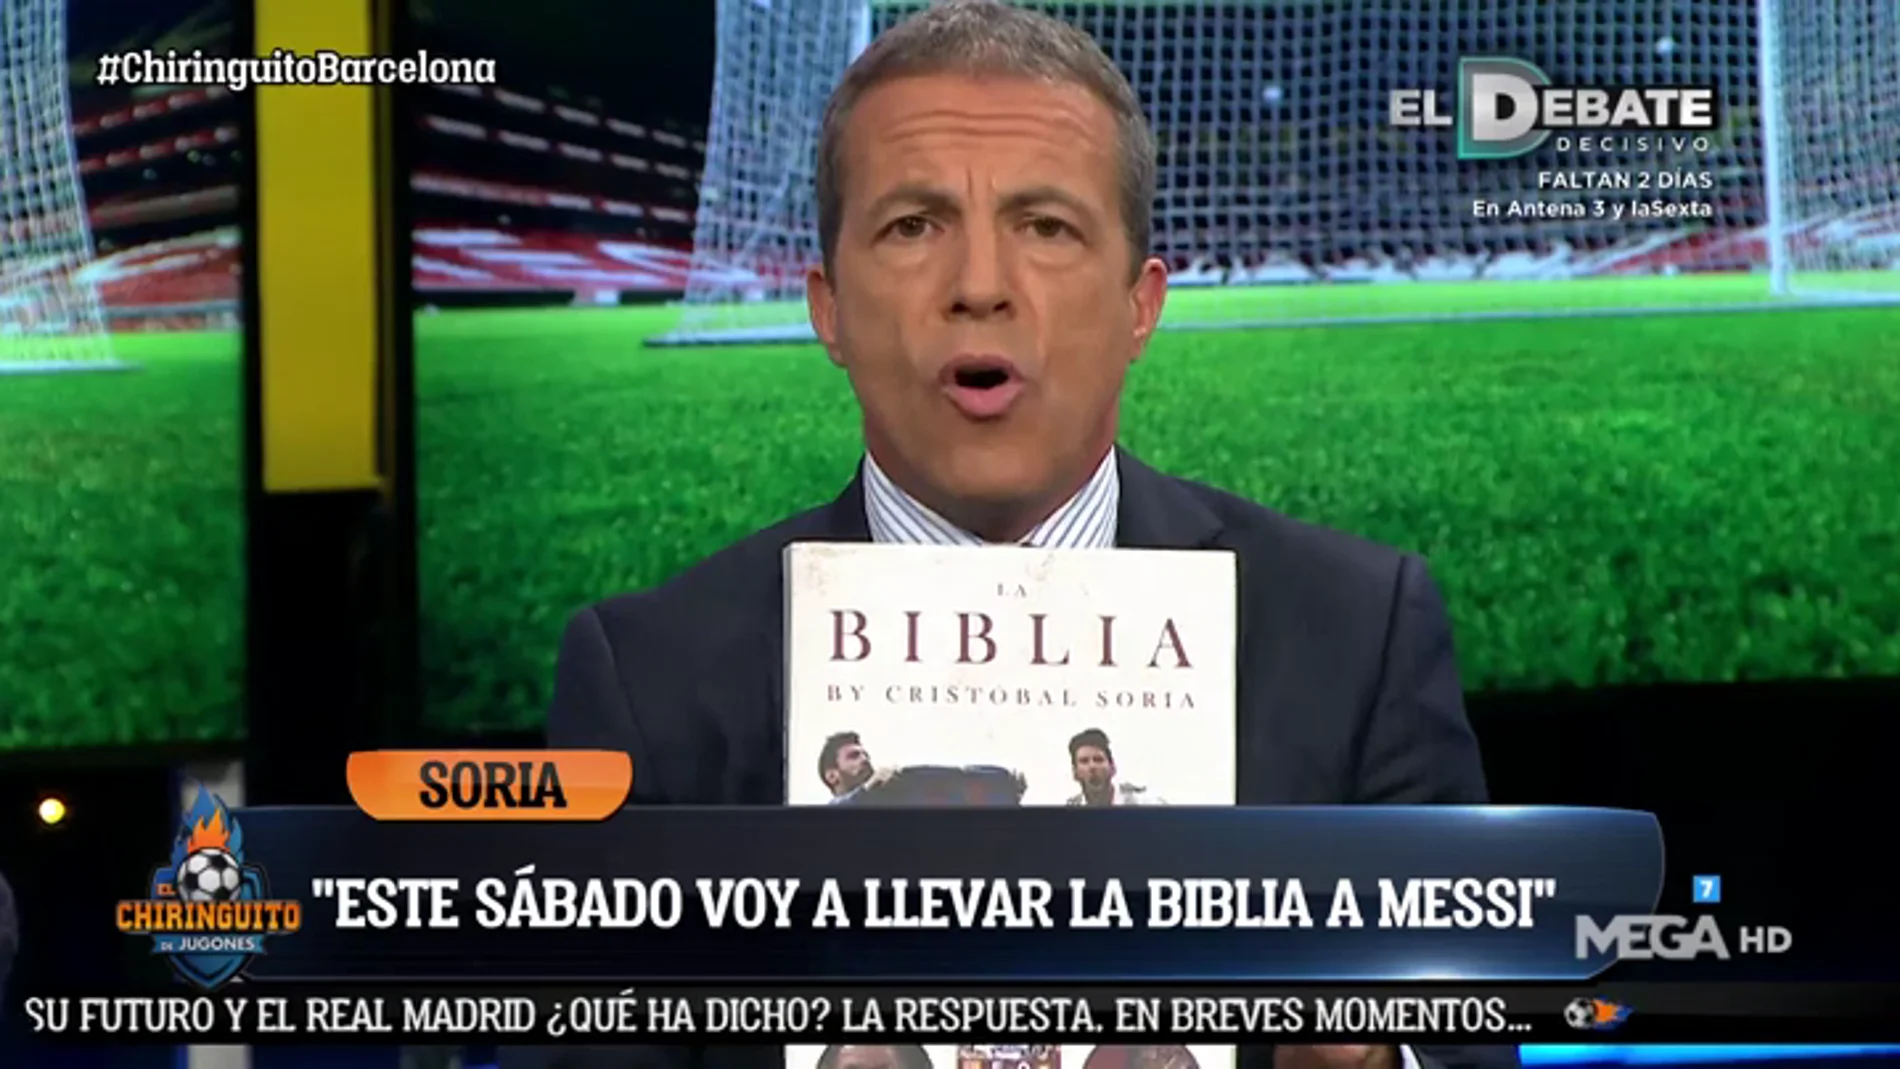 Cristóbal Soria: "Este sábado le voy a llevar la Biblia a Messi y va a escribir en ella"